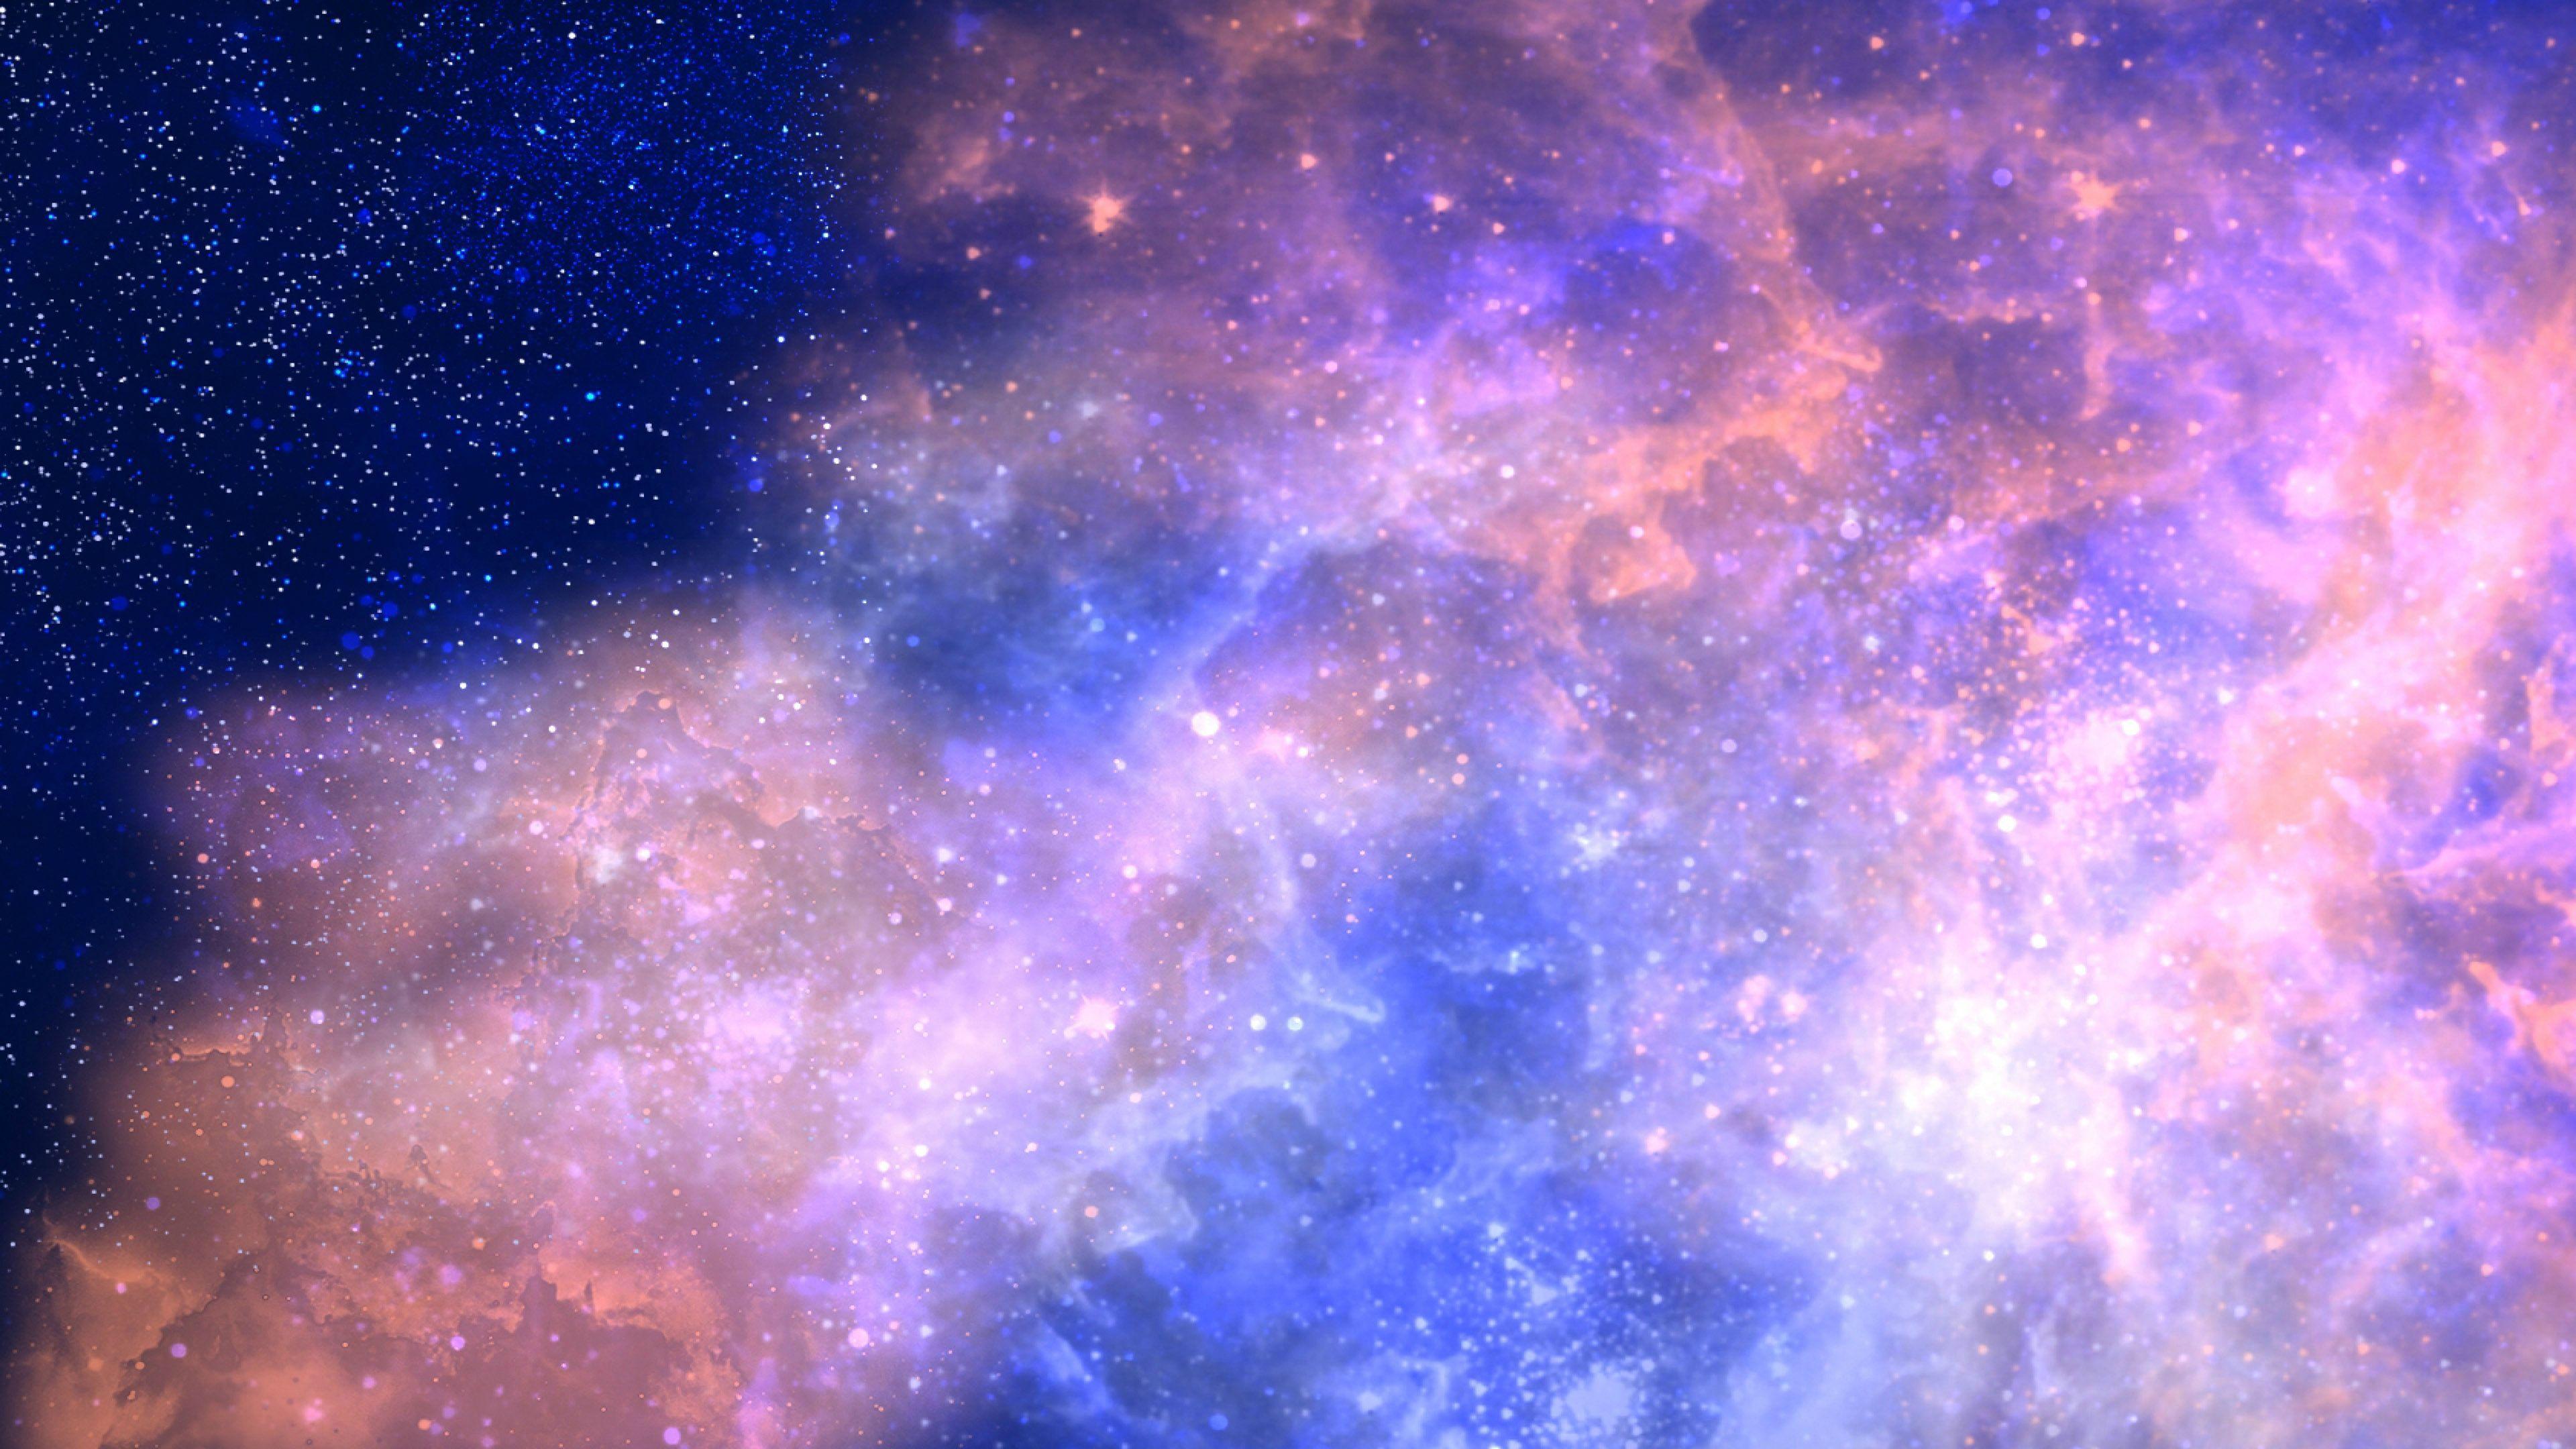 Bộ sưu tập hình nền galaxy 4K sẽ mang đến cho bạn những hình ảnh sắc nét và chi tiết nhất về các hành tinh, sao và các thiên thể không gian. Hãy cùng đắm chìm trong thế giới vô tận của vũ trụ và tận hưởng mọi khoảnh khắc đầy thú vị với bộ sưu tập này.